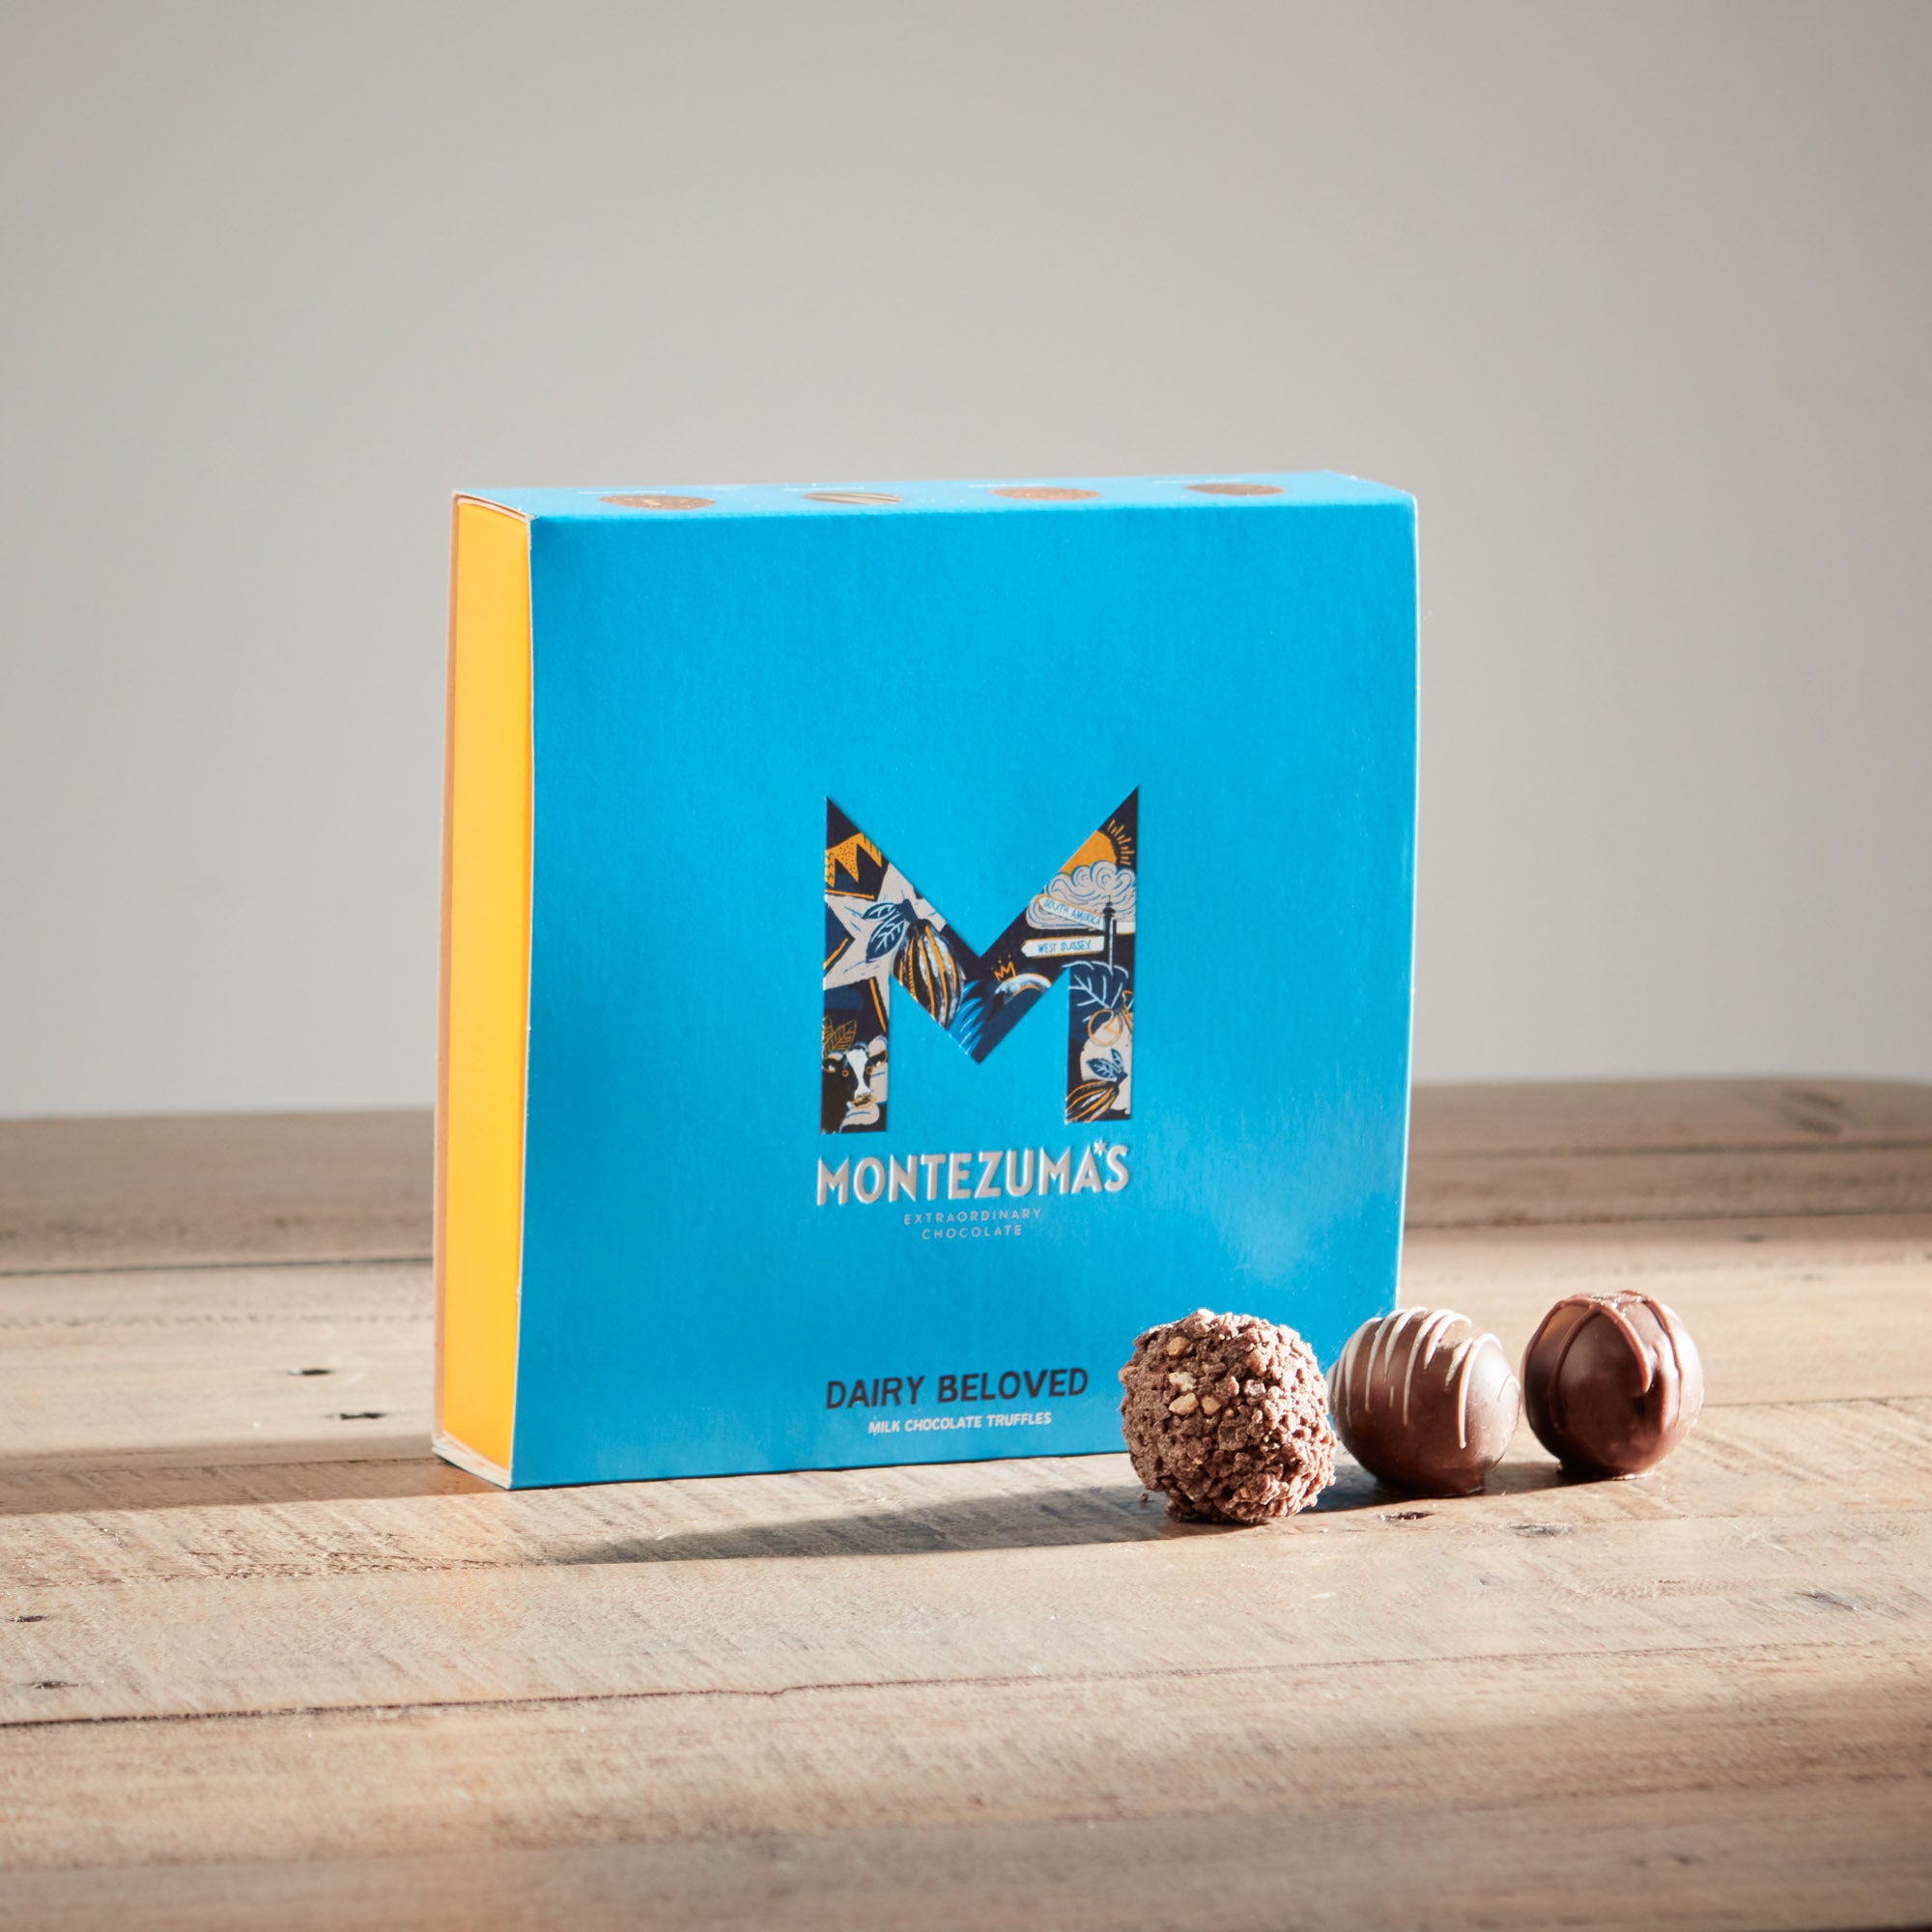 Montezuma's 'Dairy Beloved' truffles image